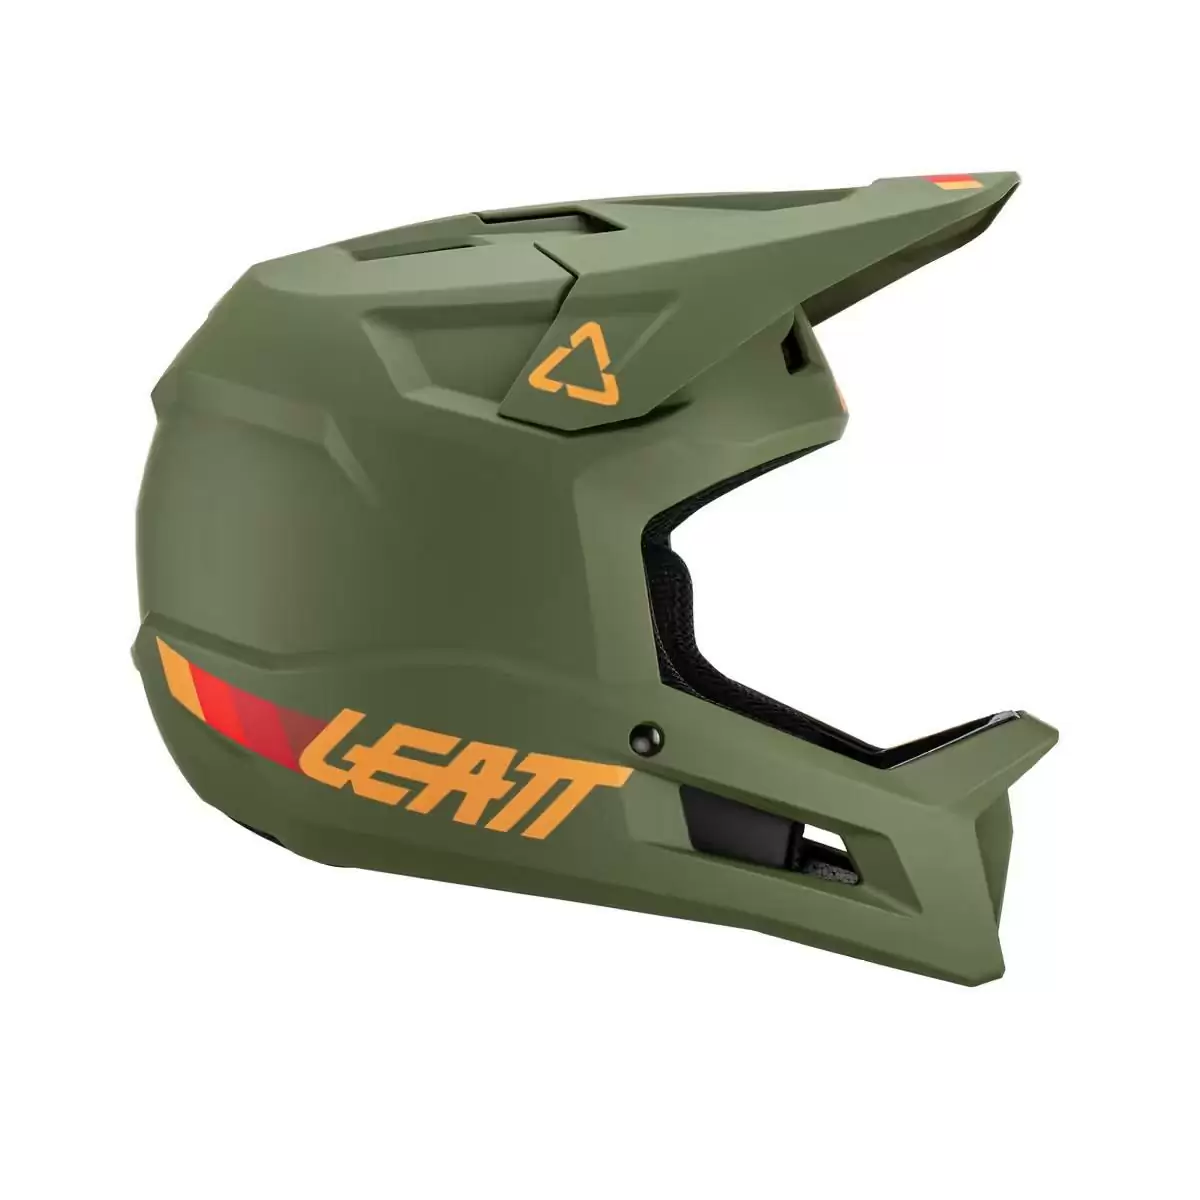 Gravity 1.0 MTB Fullface Helmet Green Pine Size S (55-56cm) #2